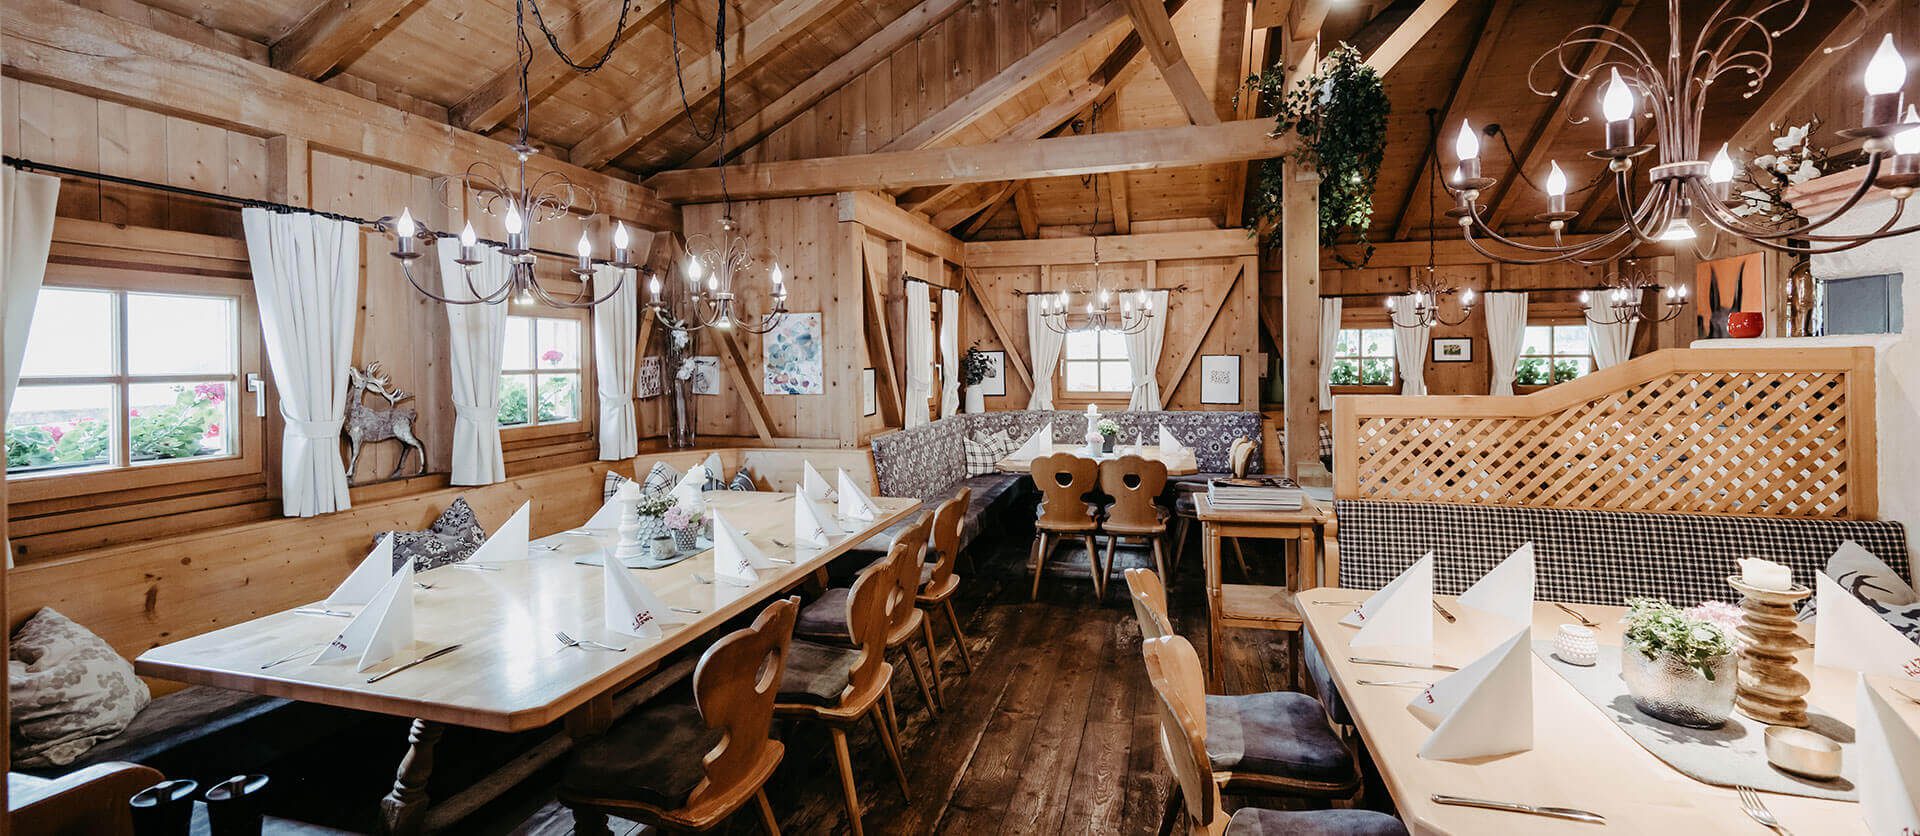 Zum Holzwurm - Ihr Restaurant in Flachau, Salzburger Land